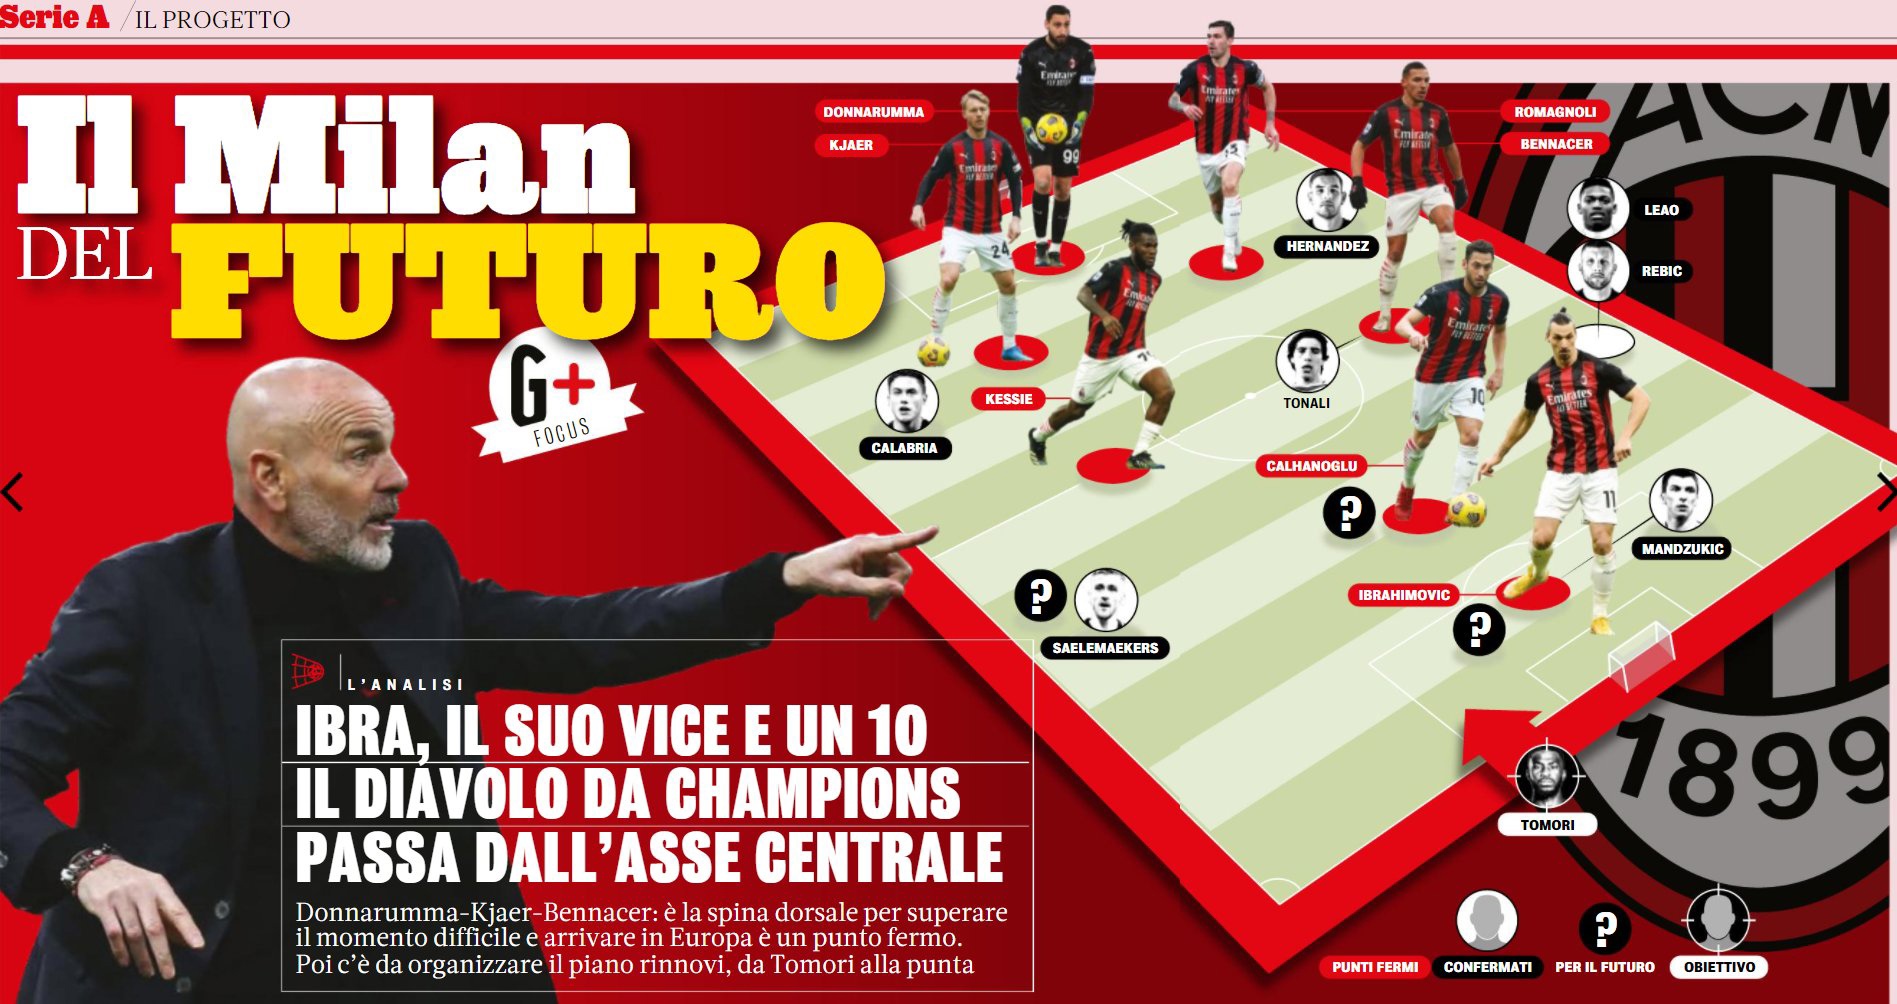 • La Gazzetta dello Sport: Целью «Милана» на сезон остаётся выход в Лигу чемпионов